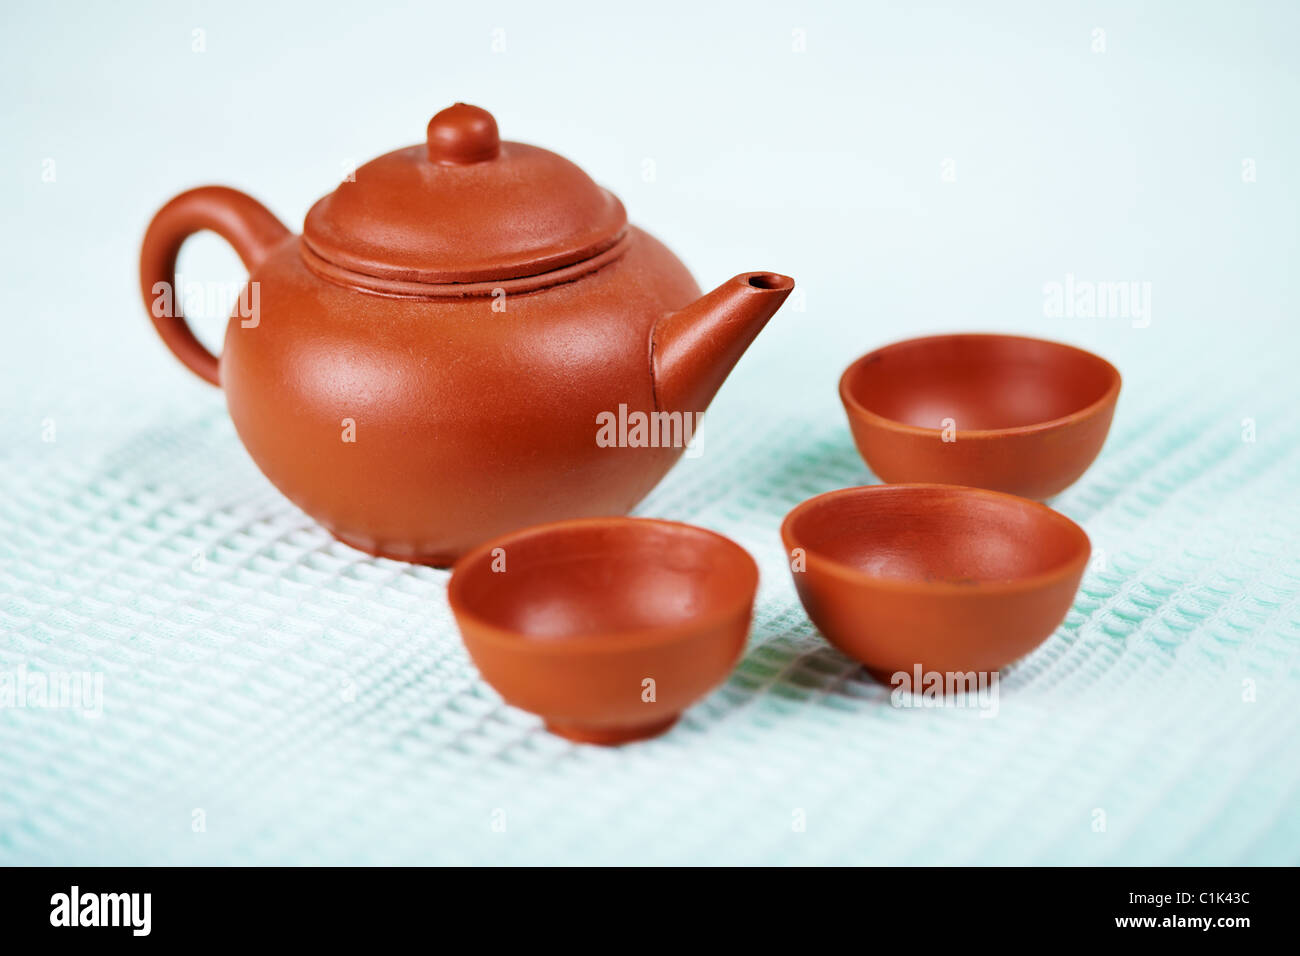 Keramik Teekanne und Tassen auf der Oberfläche ein blaues Handtuch Stockfoto